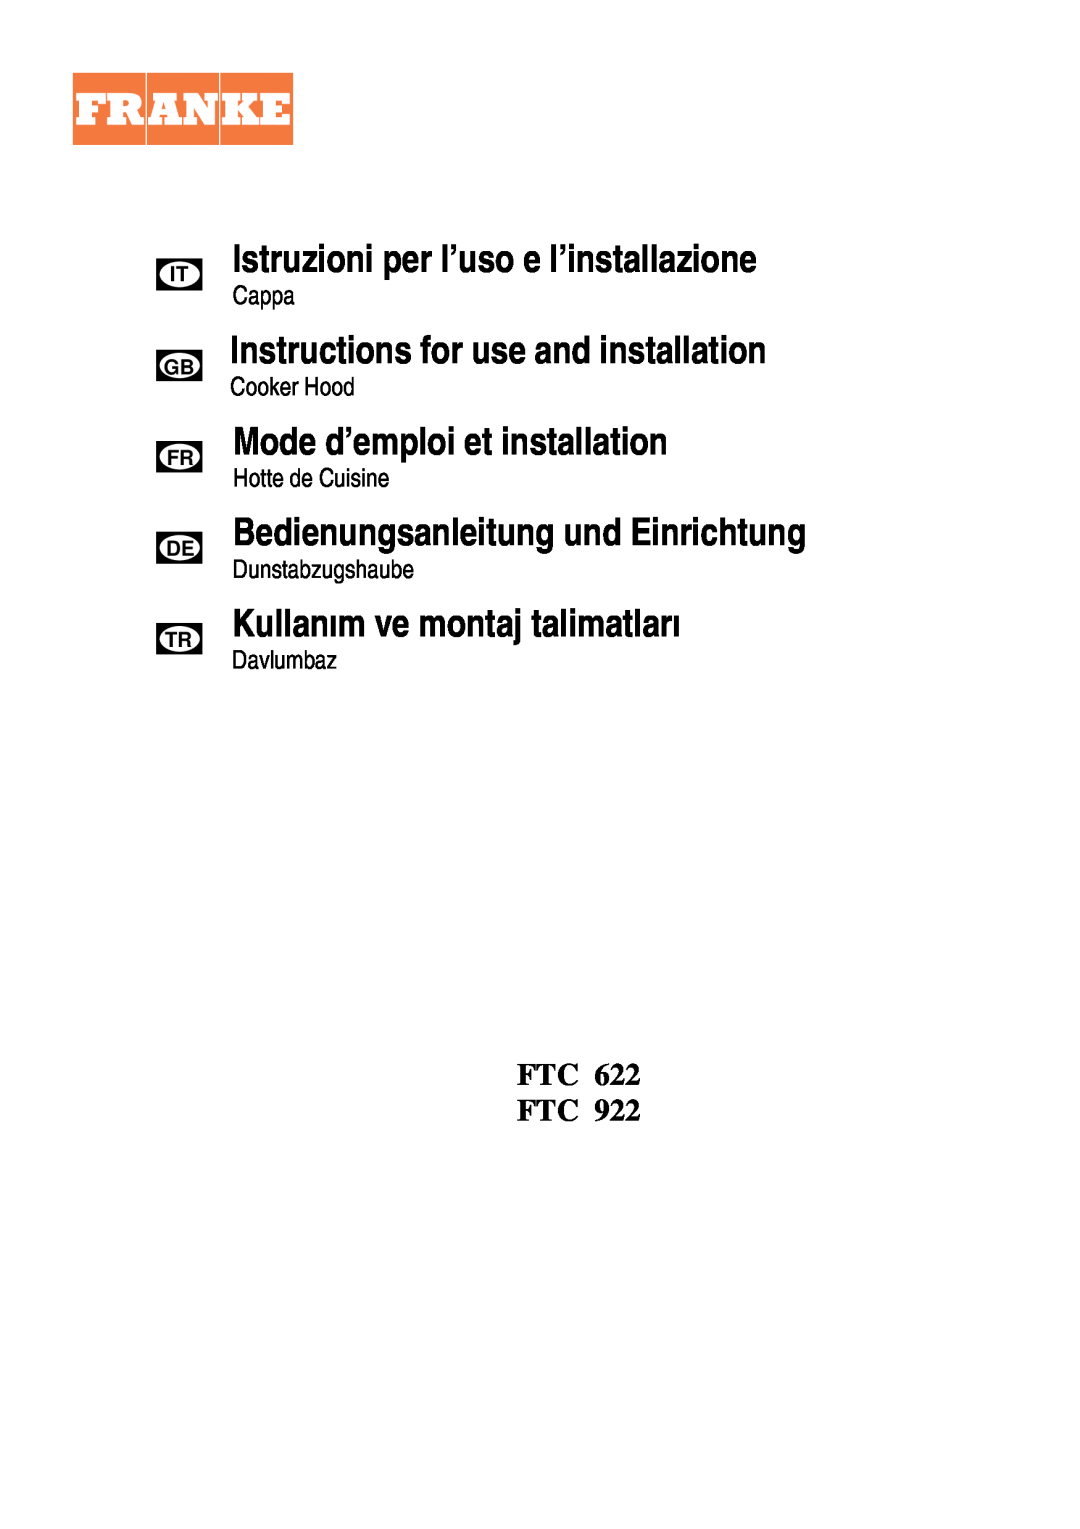 Franke Consumer Products FTC 922 manual Istruzioni per l’uso e l’installazione, Instructions for use and installation 